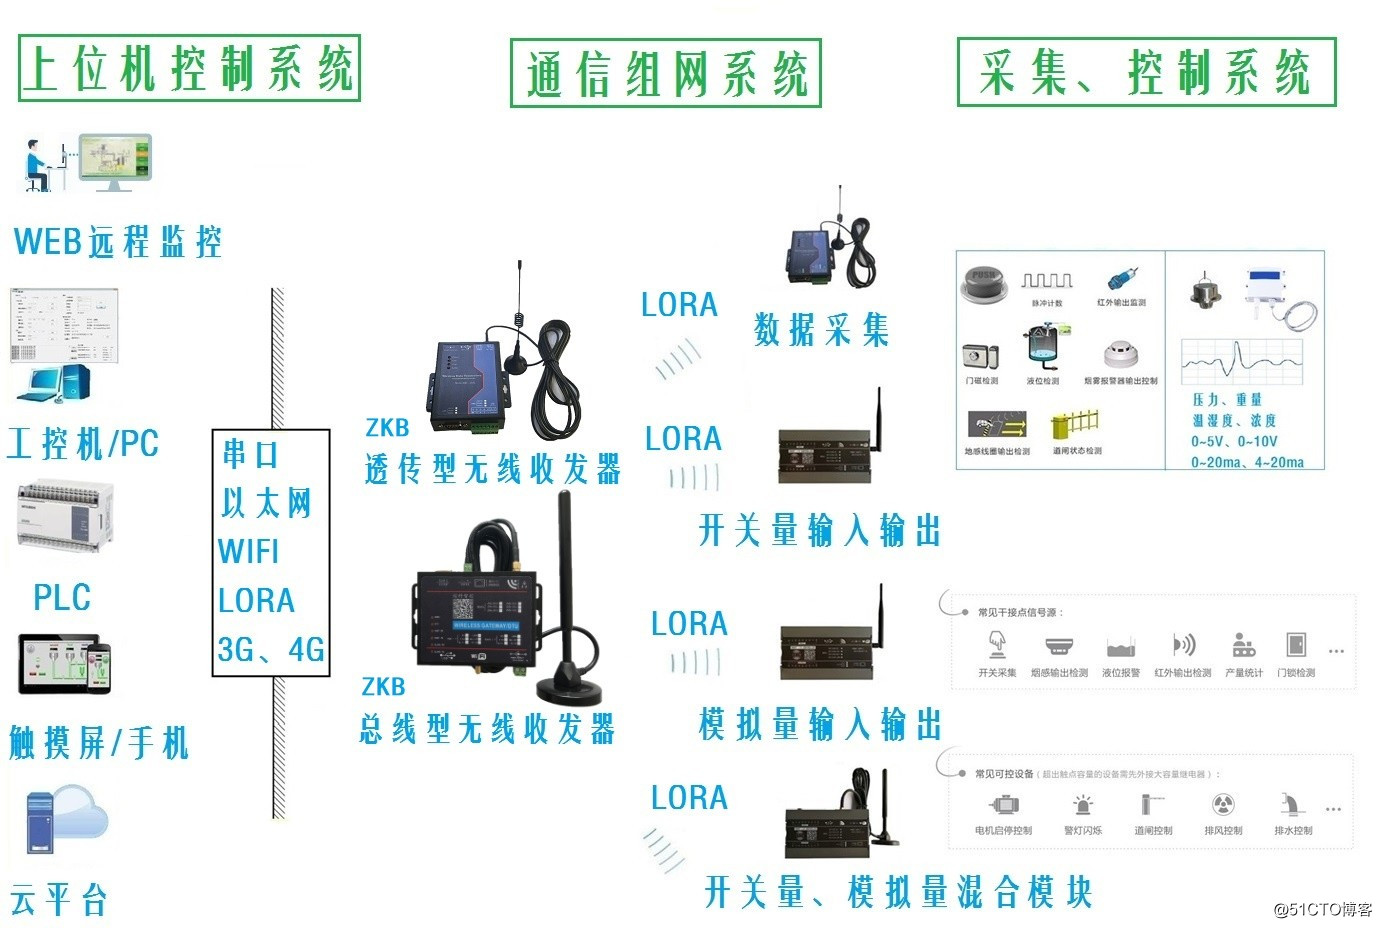 4-20ma analog quantity point-to-point wireless transmission scheme